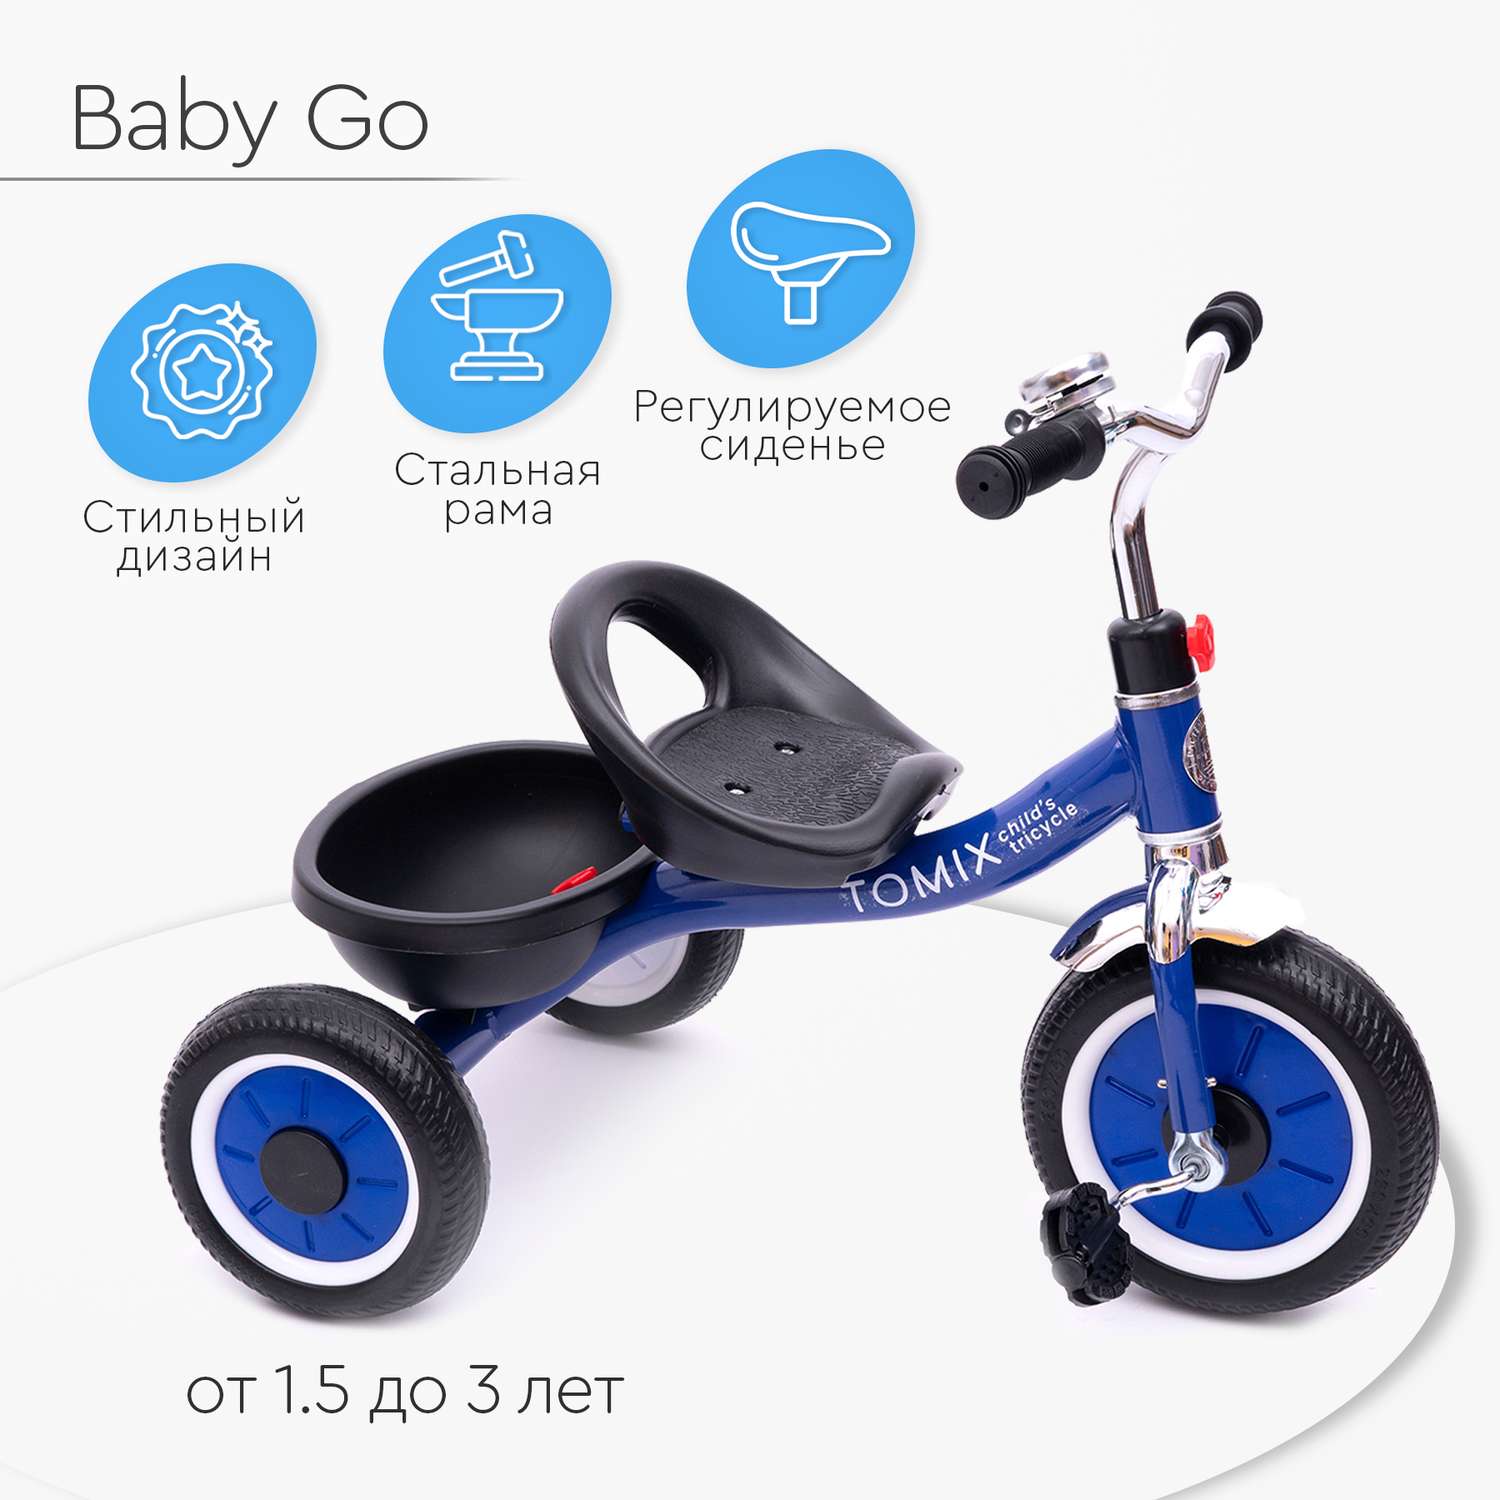 Детский трёхколесный велосипед Tomix Baby Go - фото 1